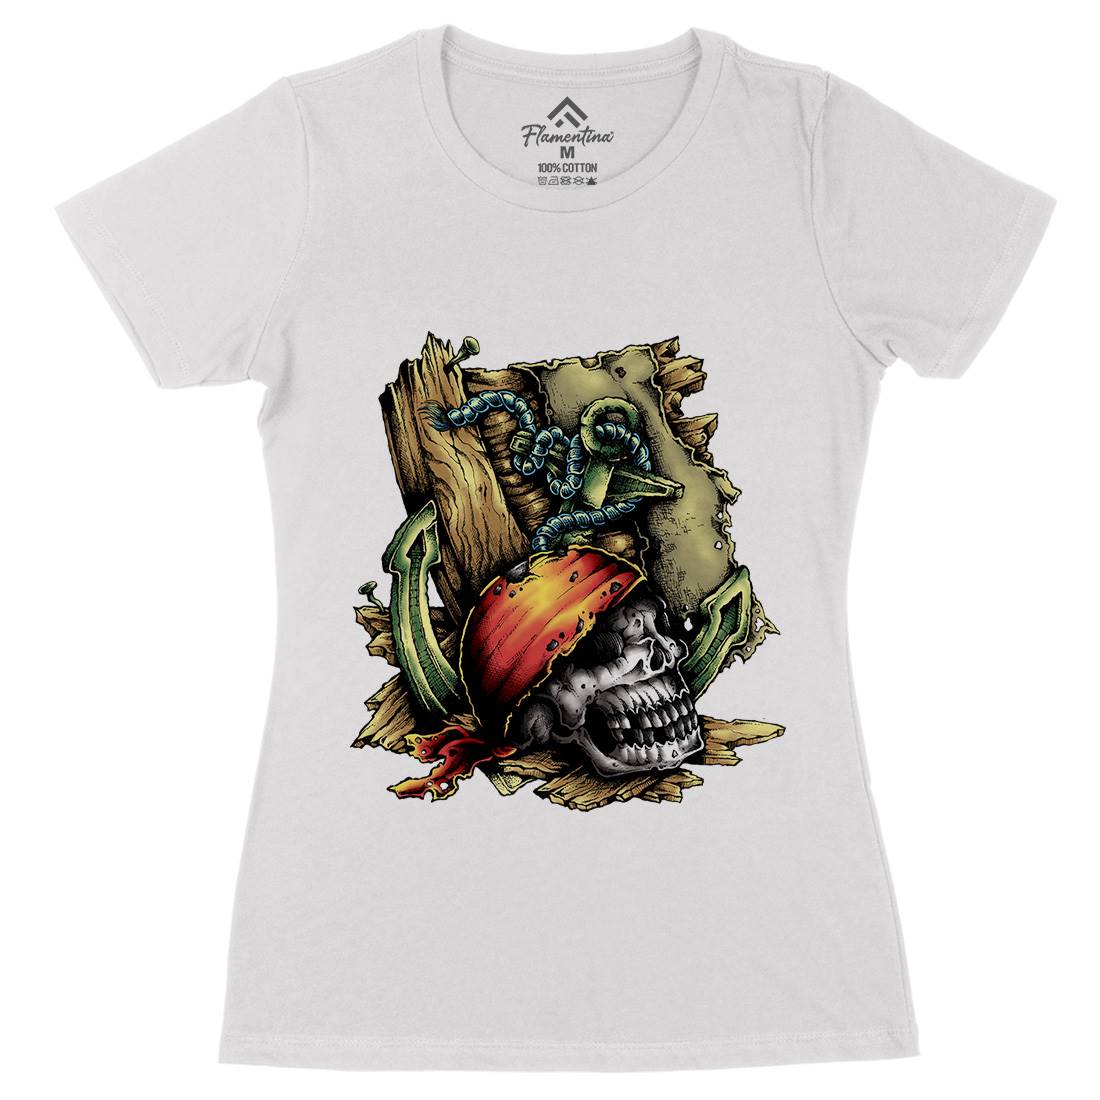 Dead Pirate Womens Organic Crew Neck T-Shirt Navy A415